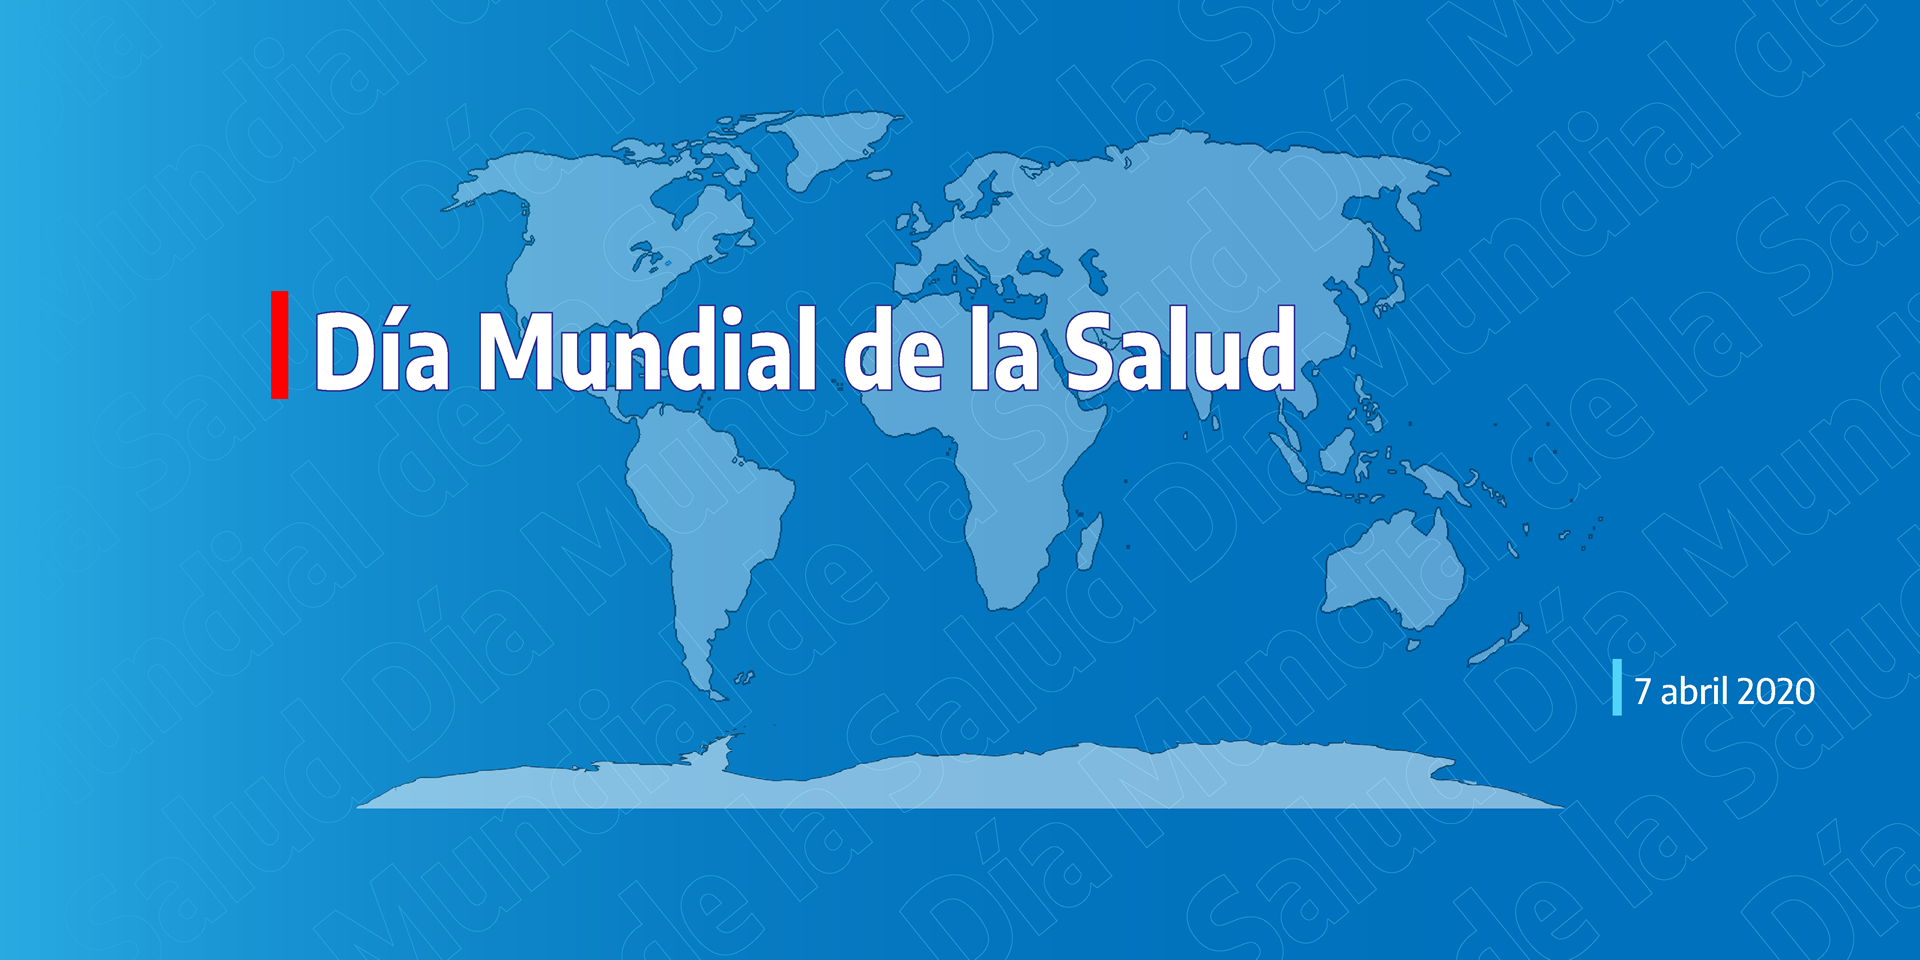 7 de abril de 2020: Día Mundial de la Salud | Argentina.gob.ar